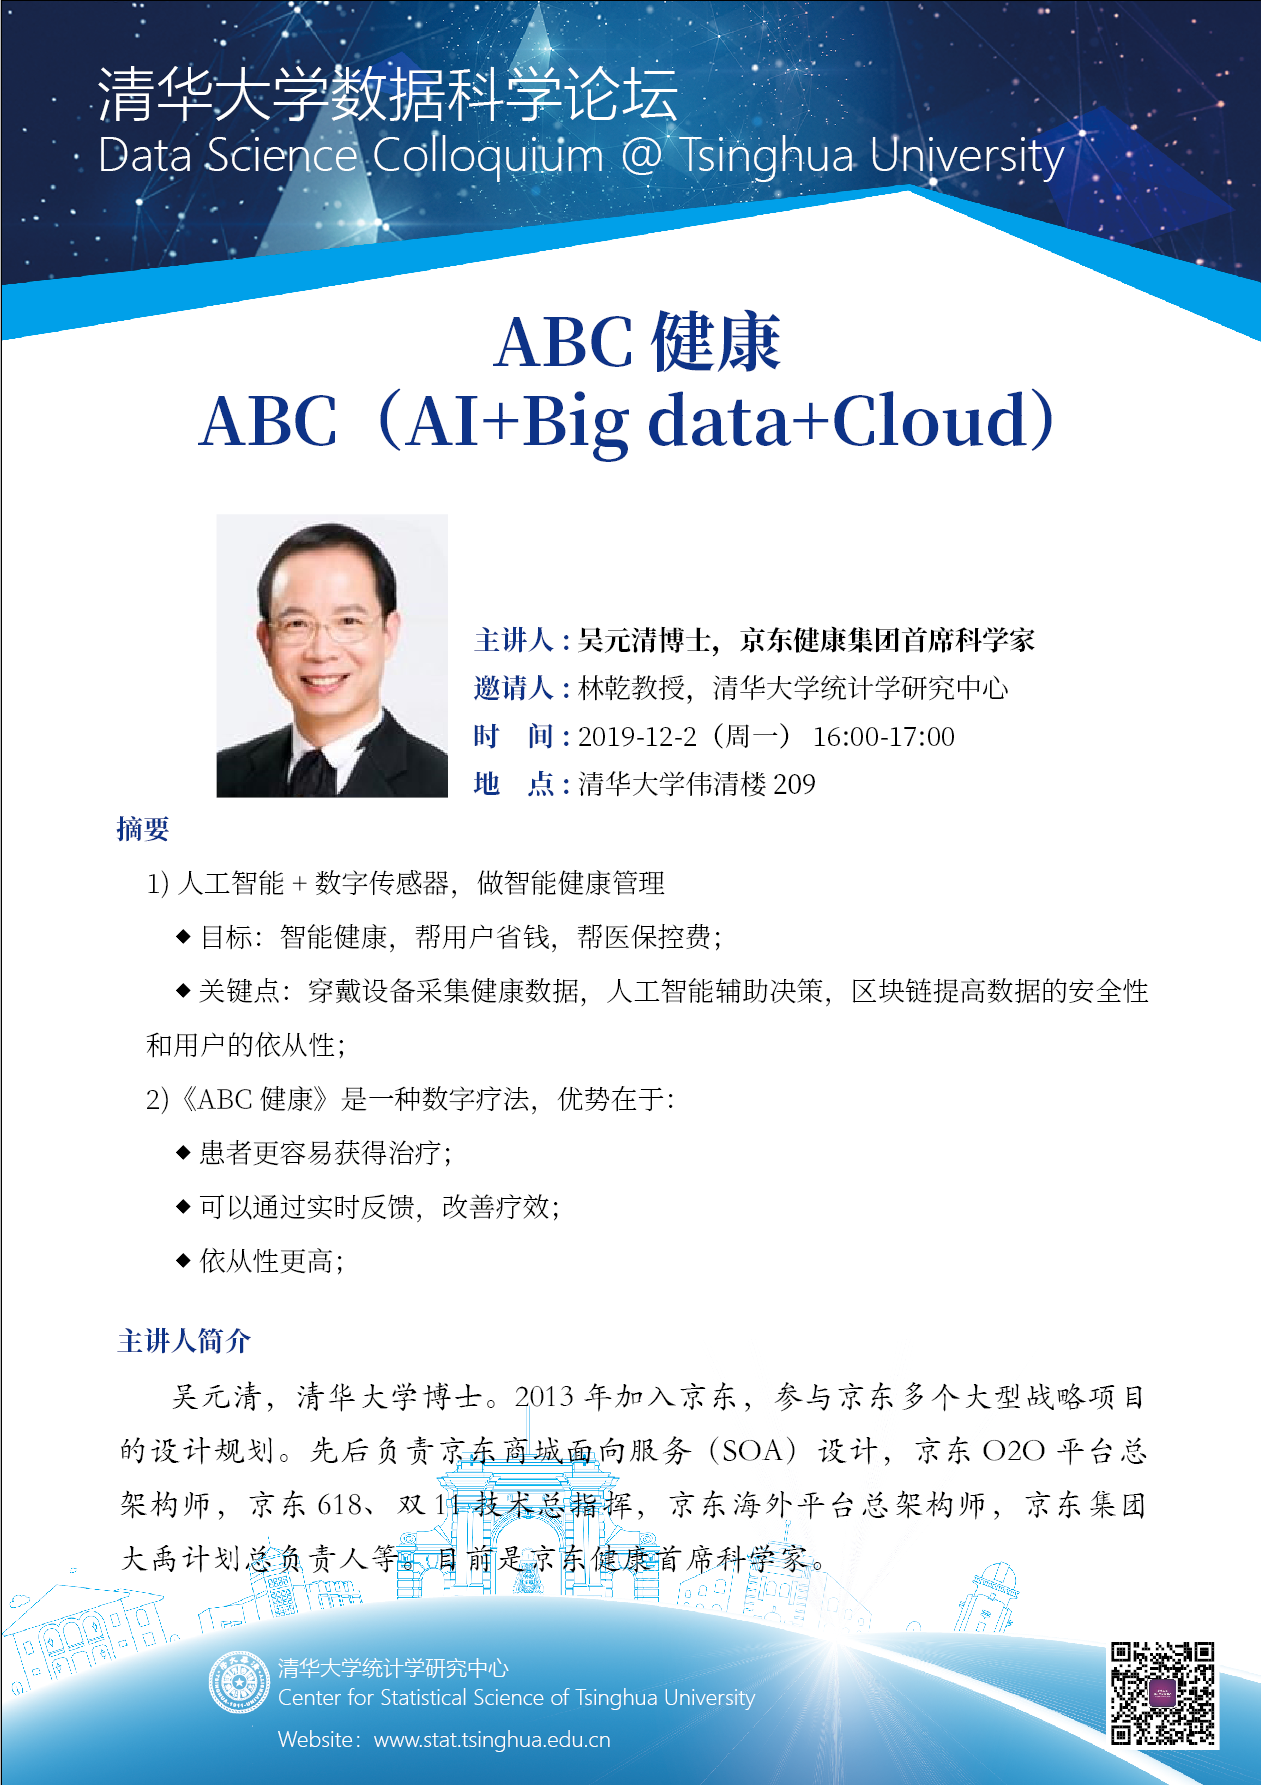 【数据科学论坛】ABC健康 ABC（AI+Big data+Cloud）